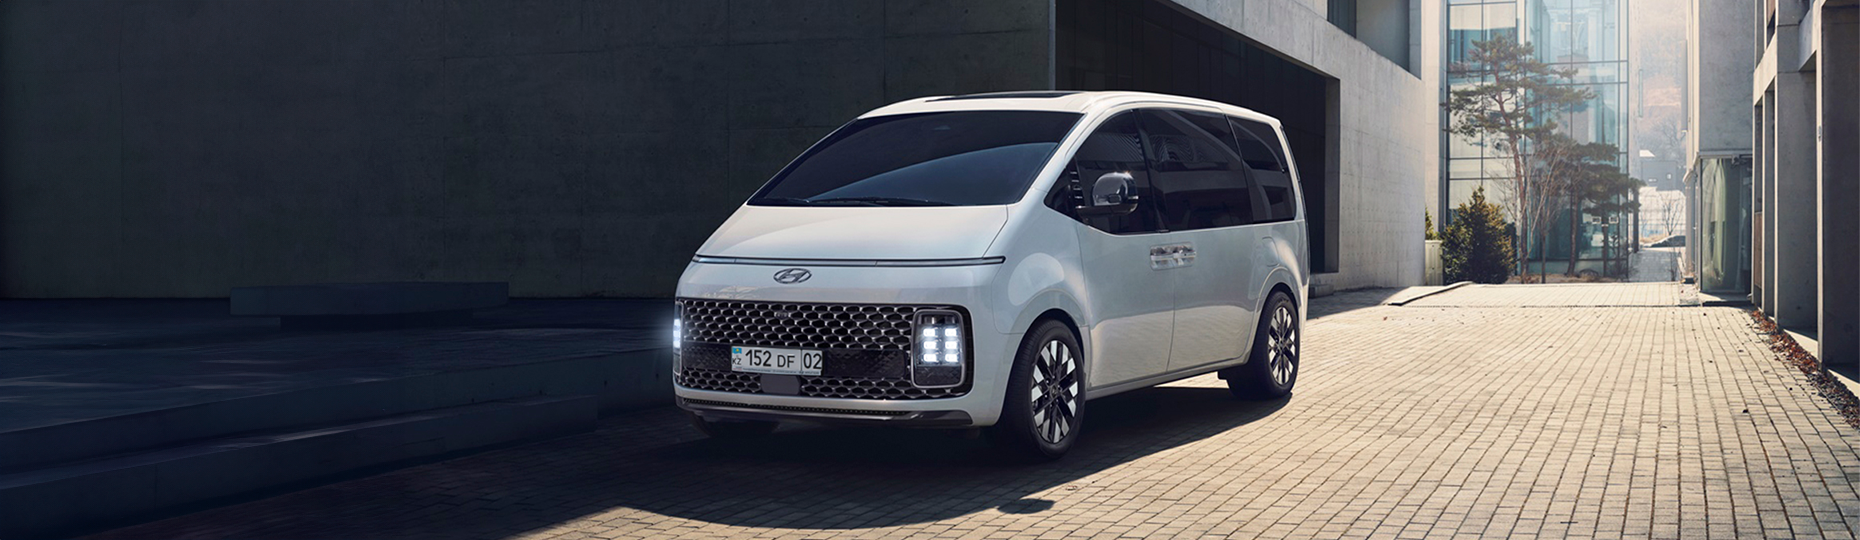 Технические характеристики Hyundai Staria | Официальный дилер в Алматы